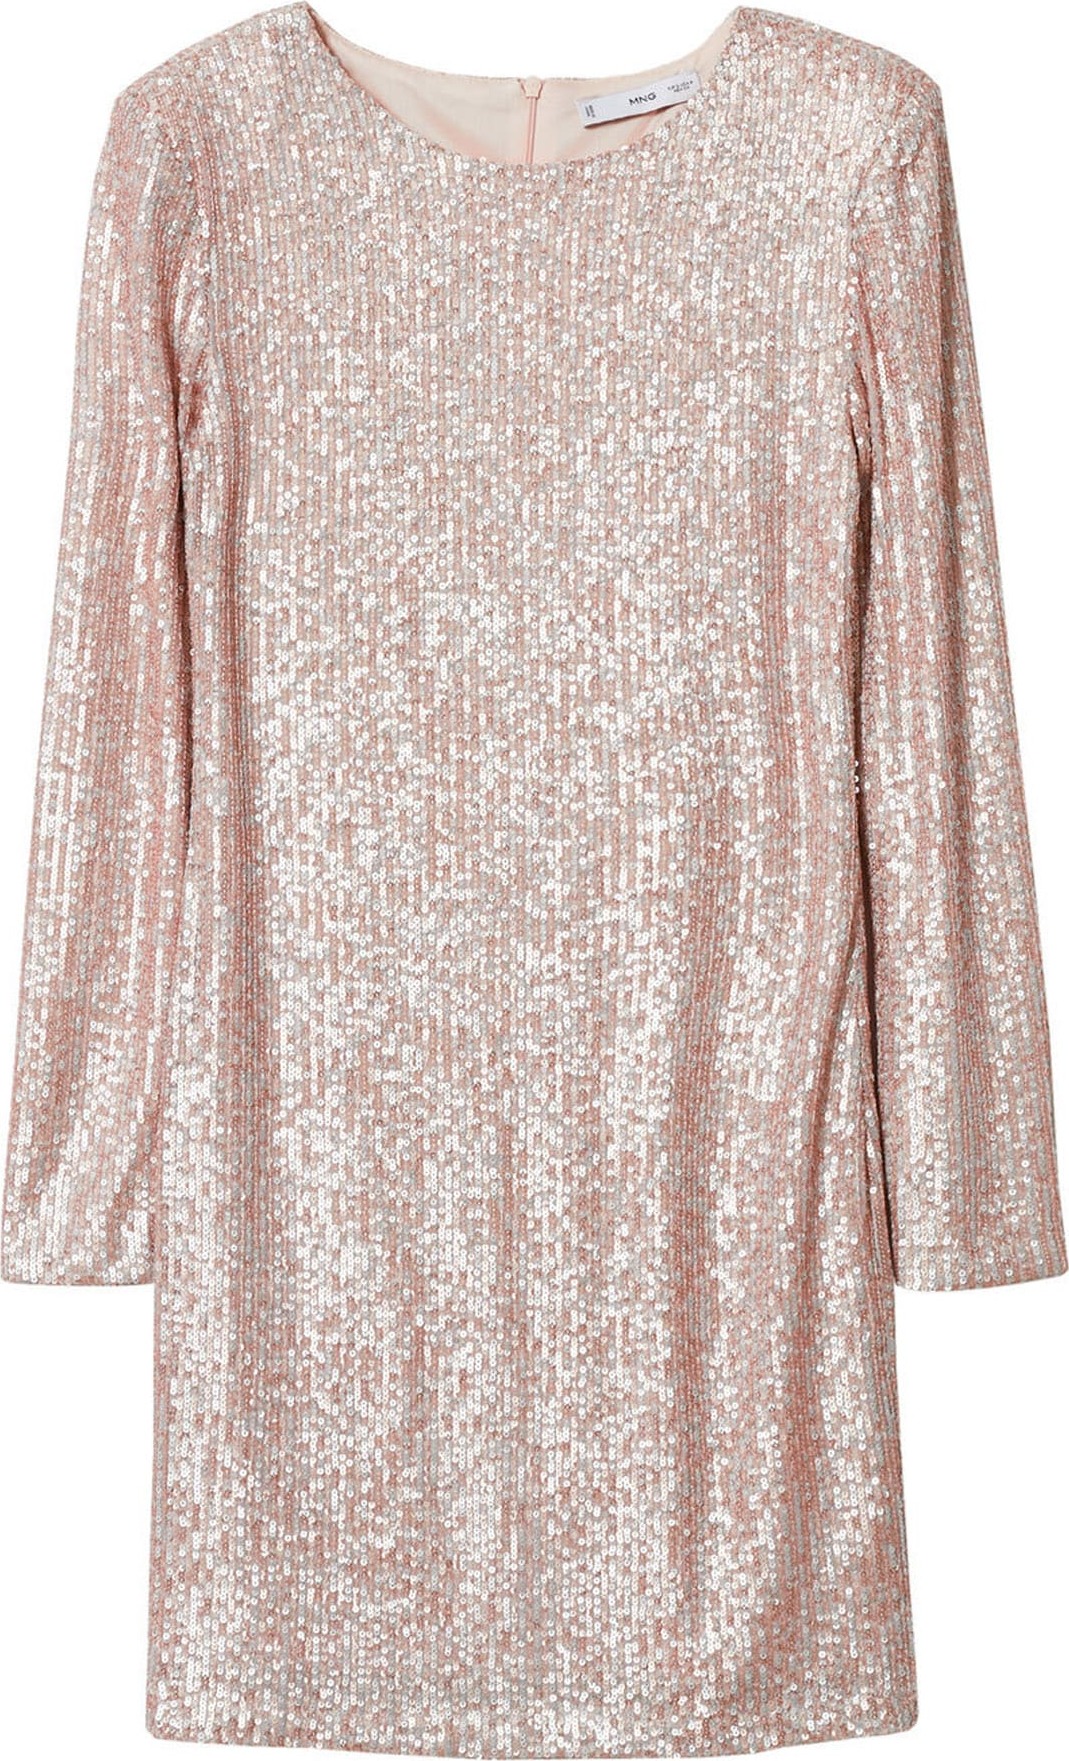 MANGO Společenské šaty 'Xlenjuel' světle růžová / stříbrná